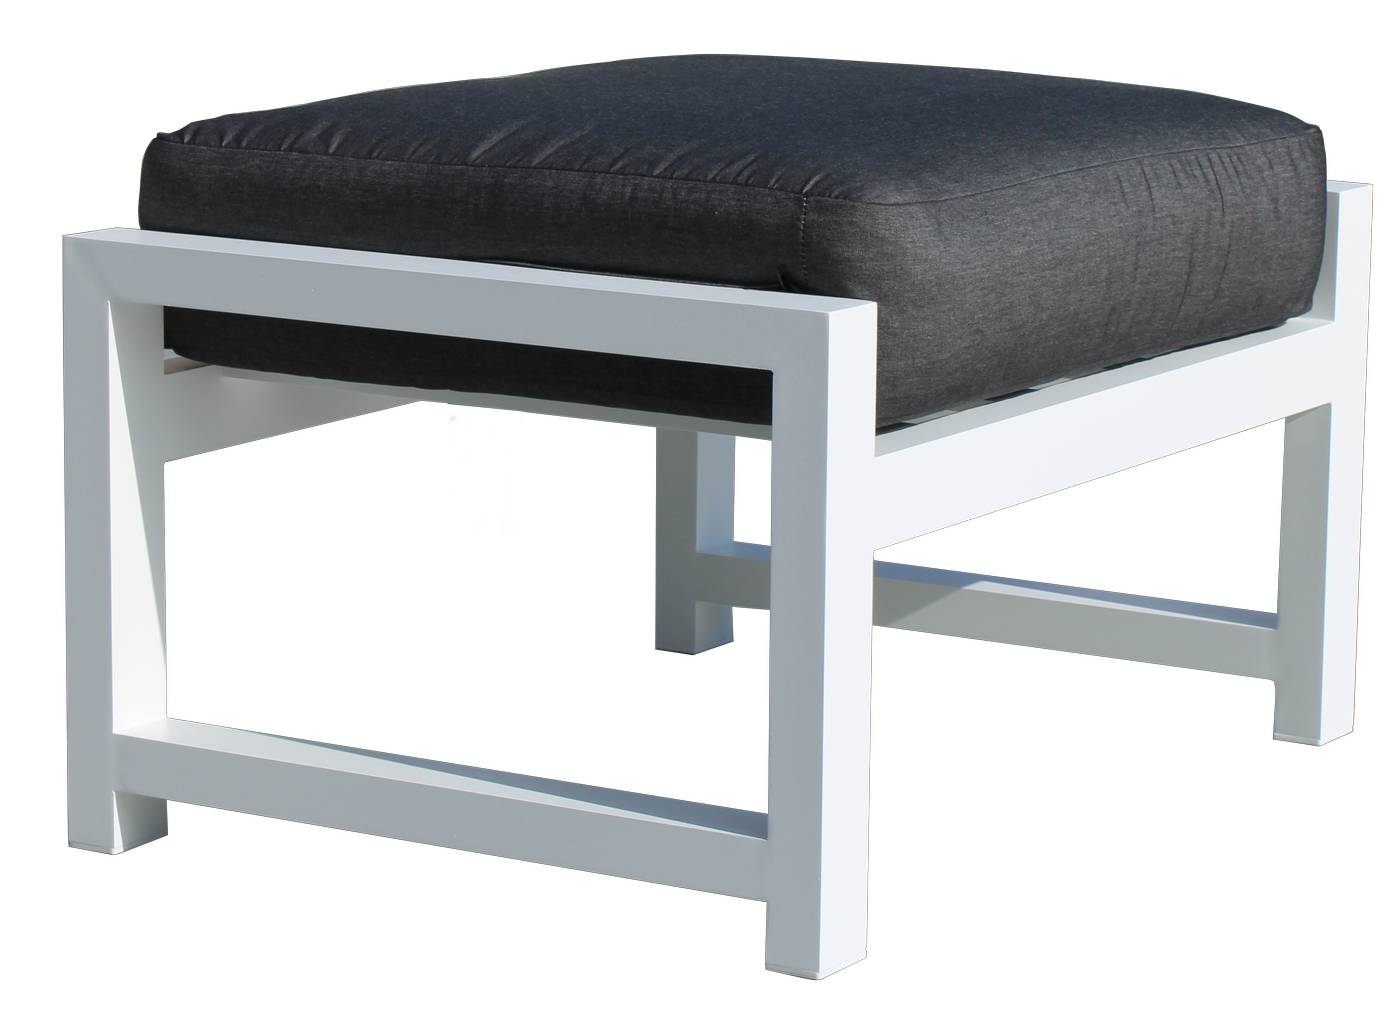 Set Sofá/Cama Arizona-100 - Conjunto aluminio con opción de cojines en los brazos: sofá/cama de 3 plazas + 2 sillones + 1 mesa de centro + 2 reposapiés. Color: blanco, antracita, marrón, champagne o plata.